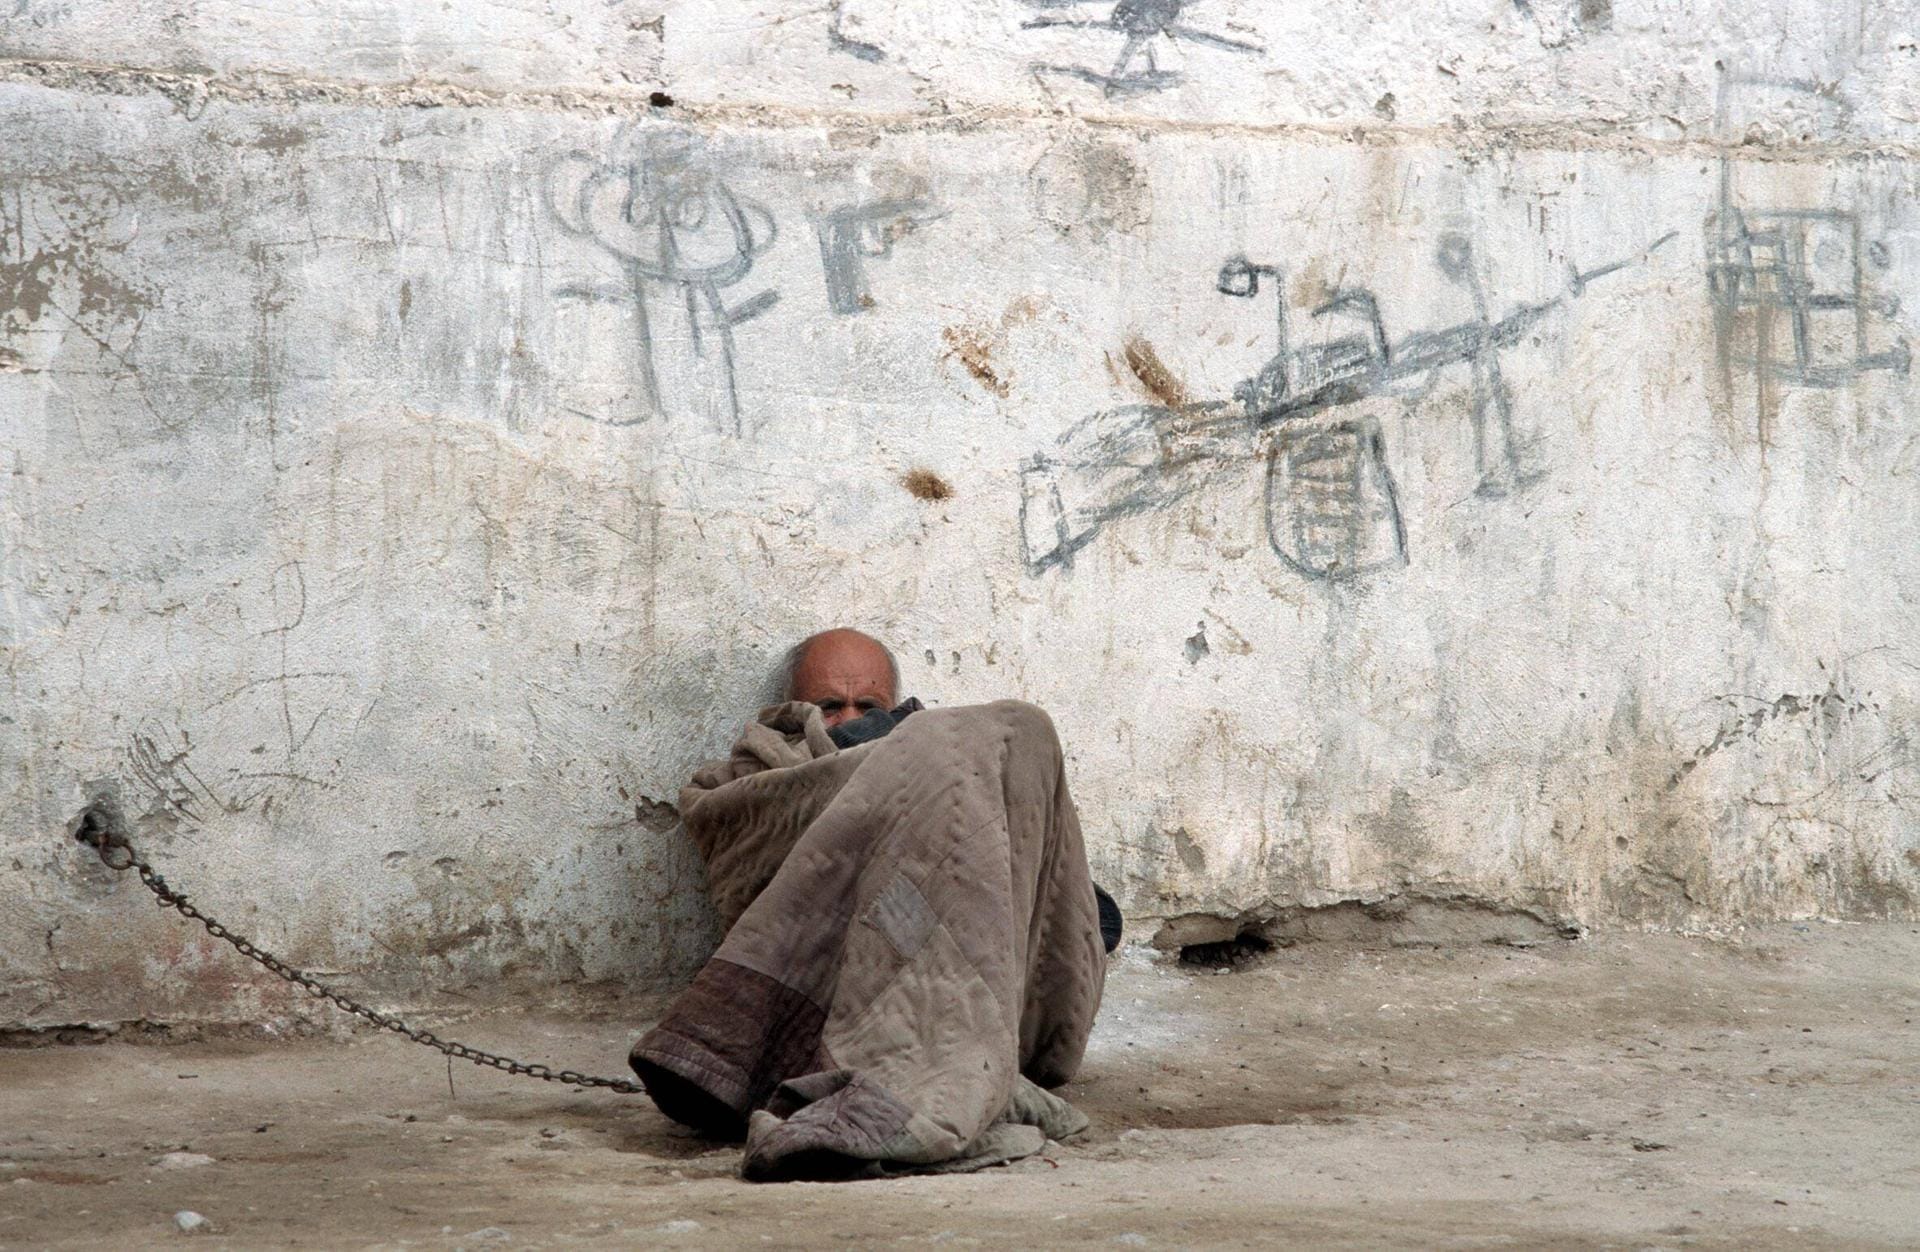 Ein Mann in einem Heim für Menschen mit geistiger Behinderung in Afghanistan: Menschen, die durch den Krieg traumatisiert waren, wurden dort angekettet.